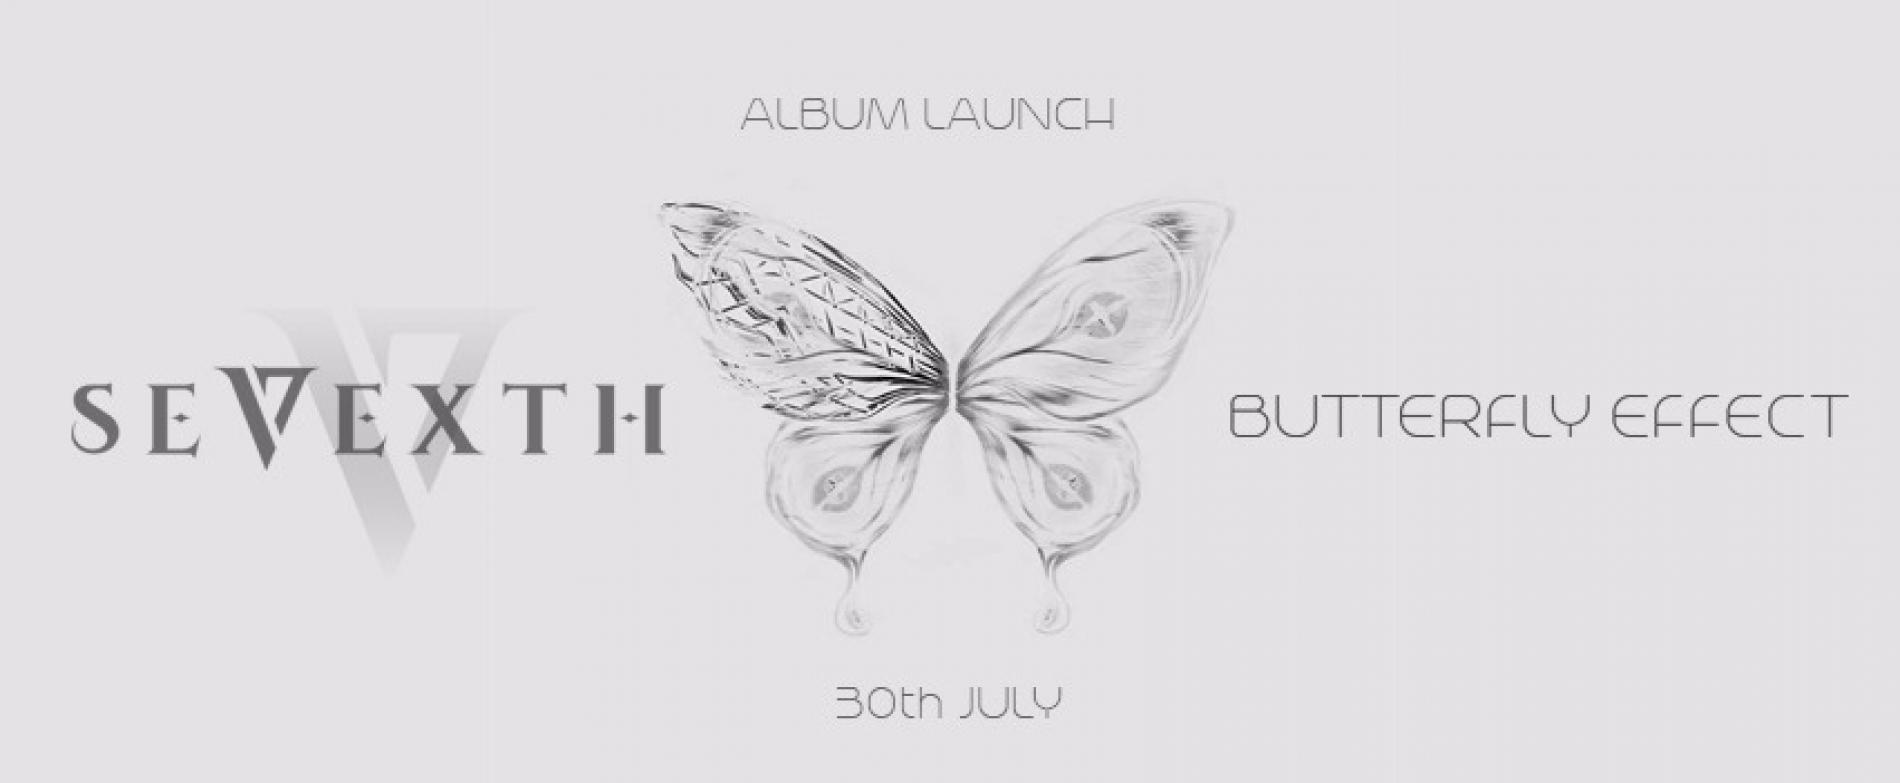 Sevexth : Butterfly Effect (Album Launch)